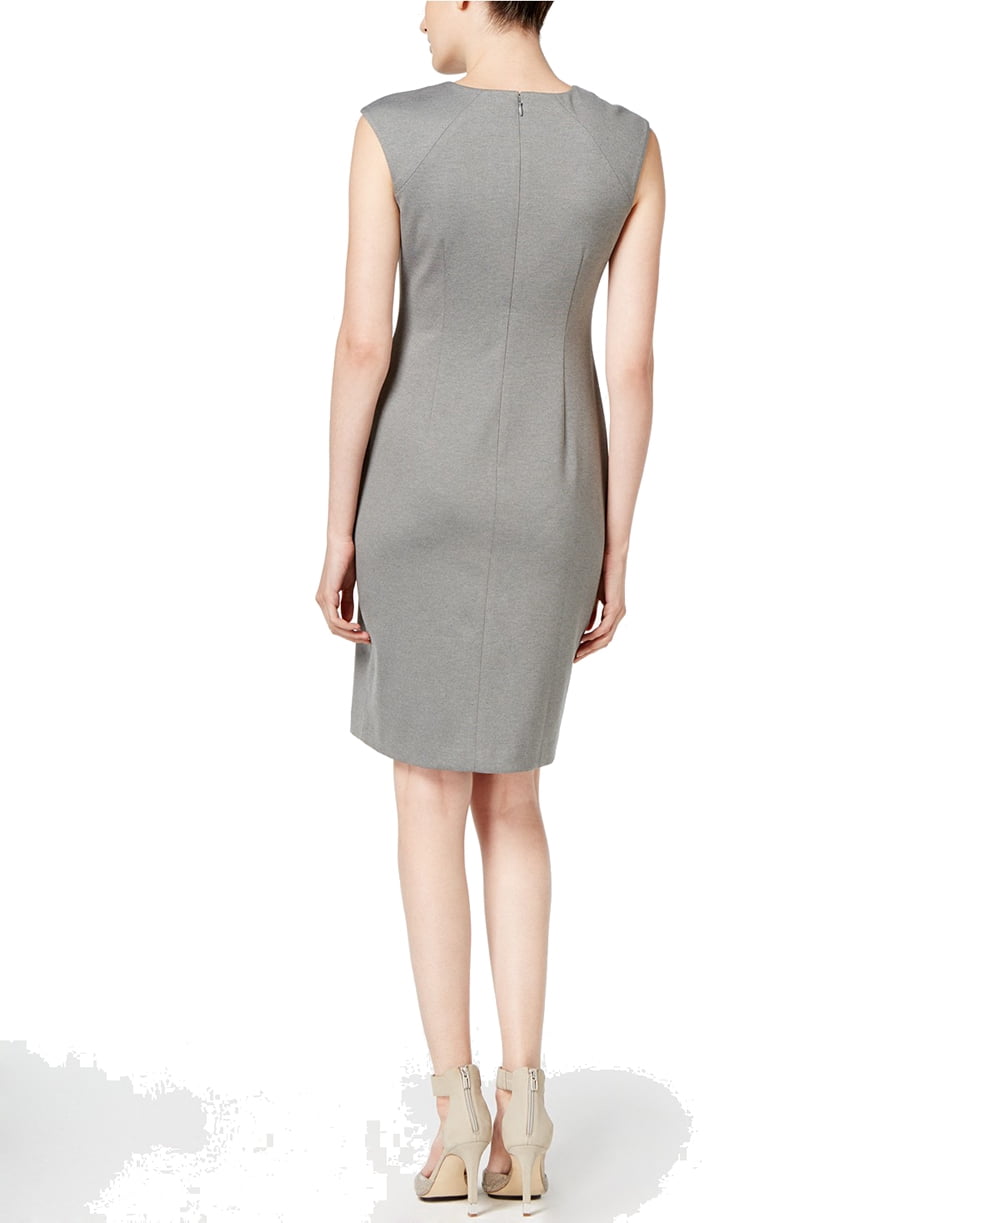 Calvin Klein Women's Horseshoe Neck Sheath Dress, Light Grey, 12 -  